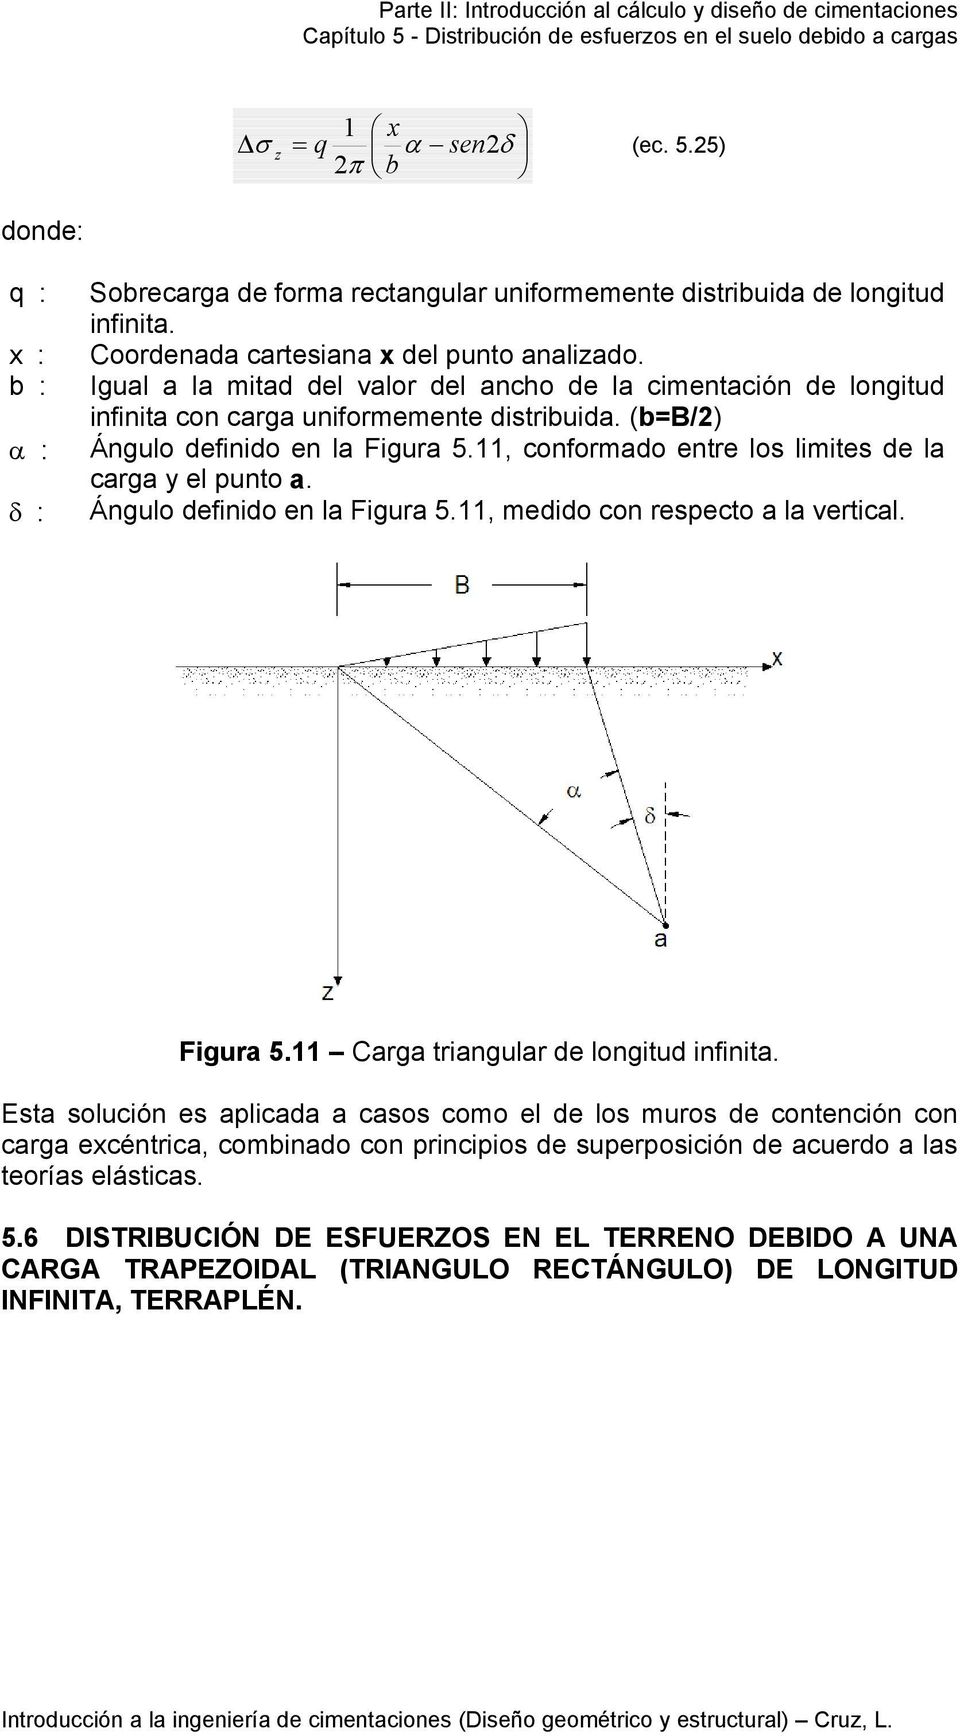 Águlo defiido e la Figura 5., edido co respecto a la vertical. Figura 5. Carga triagular de logitud ifiita.